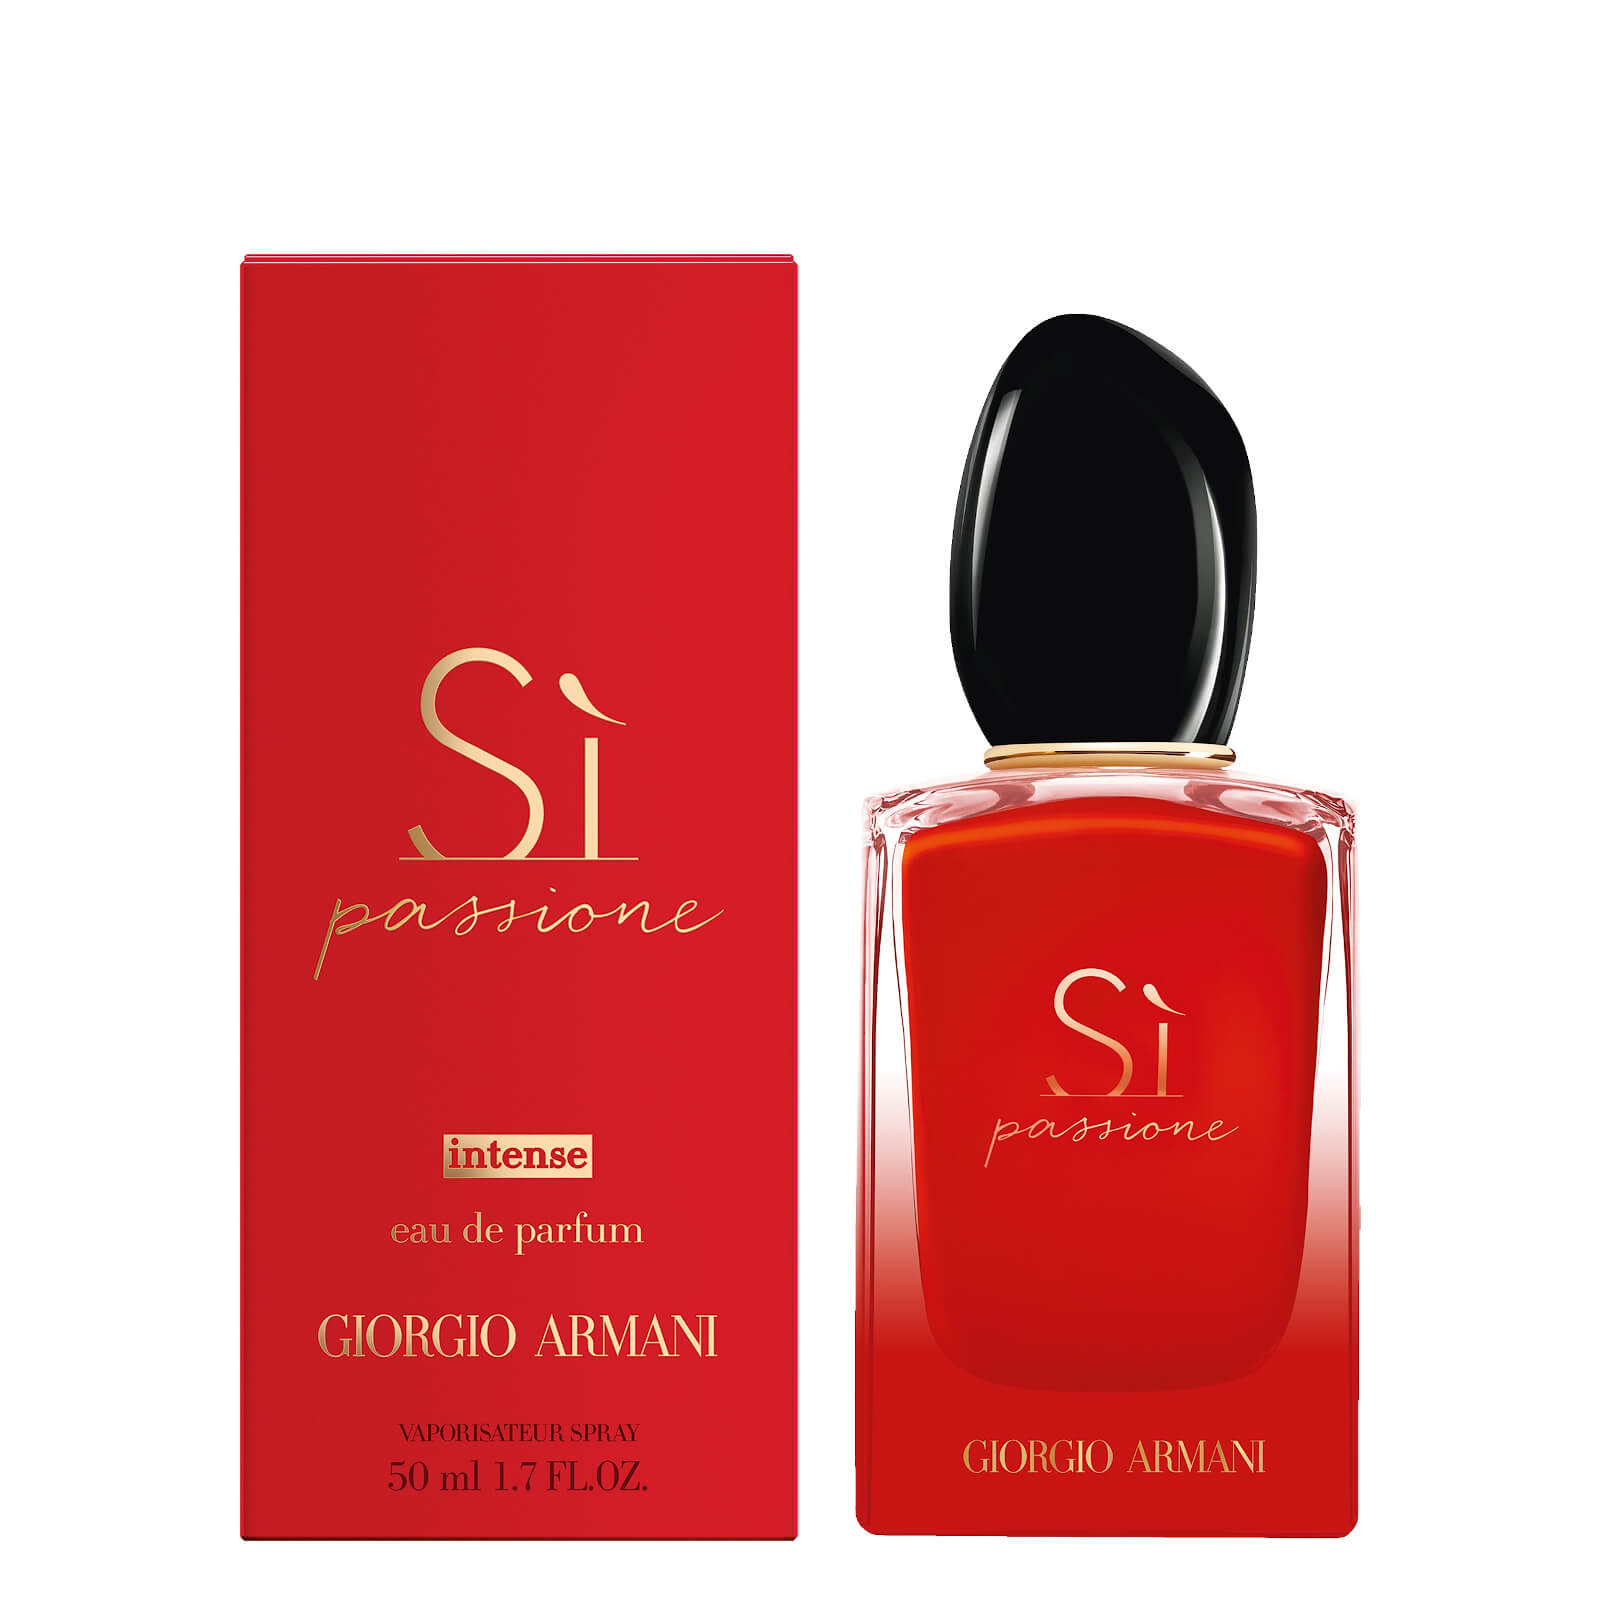 Giorgio Armani Si Passione Intense Eau De Parfum